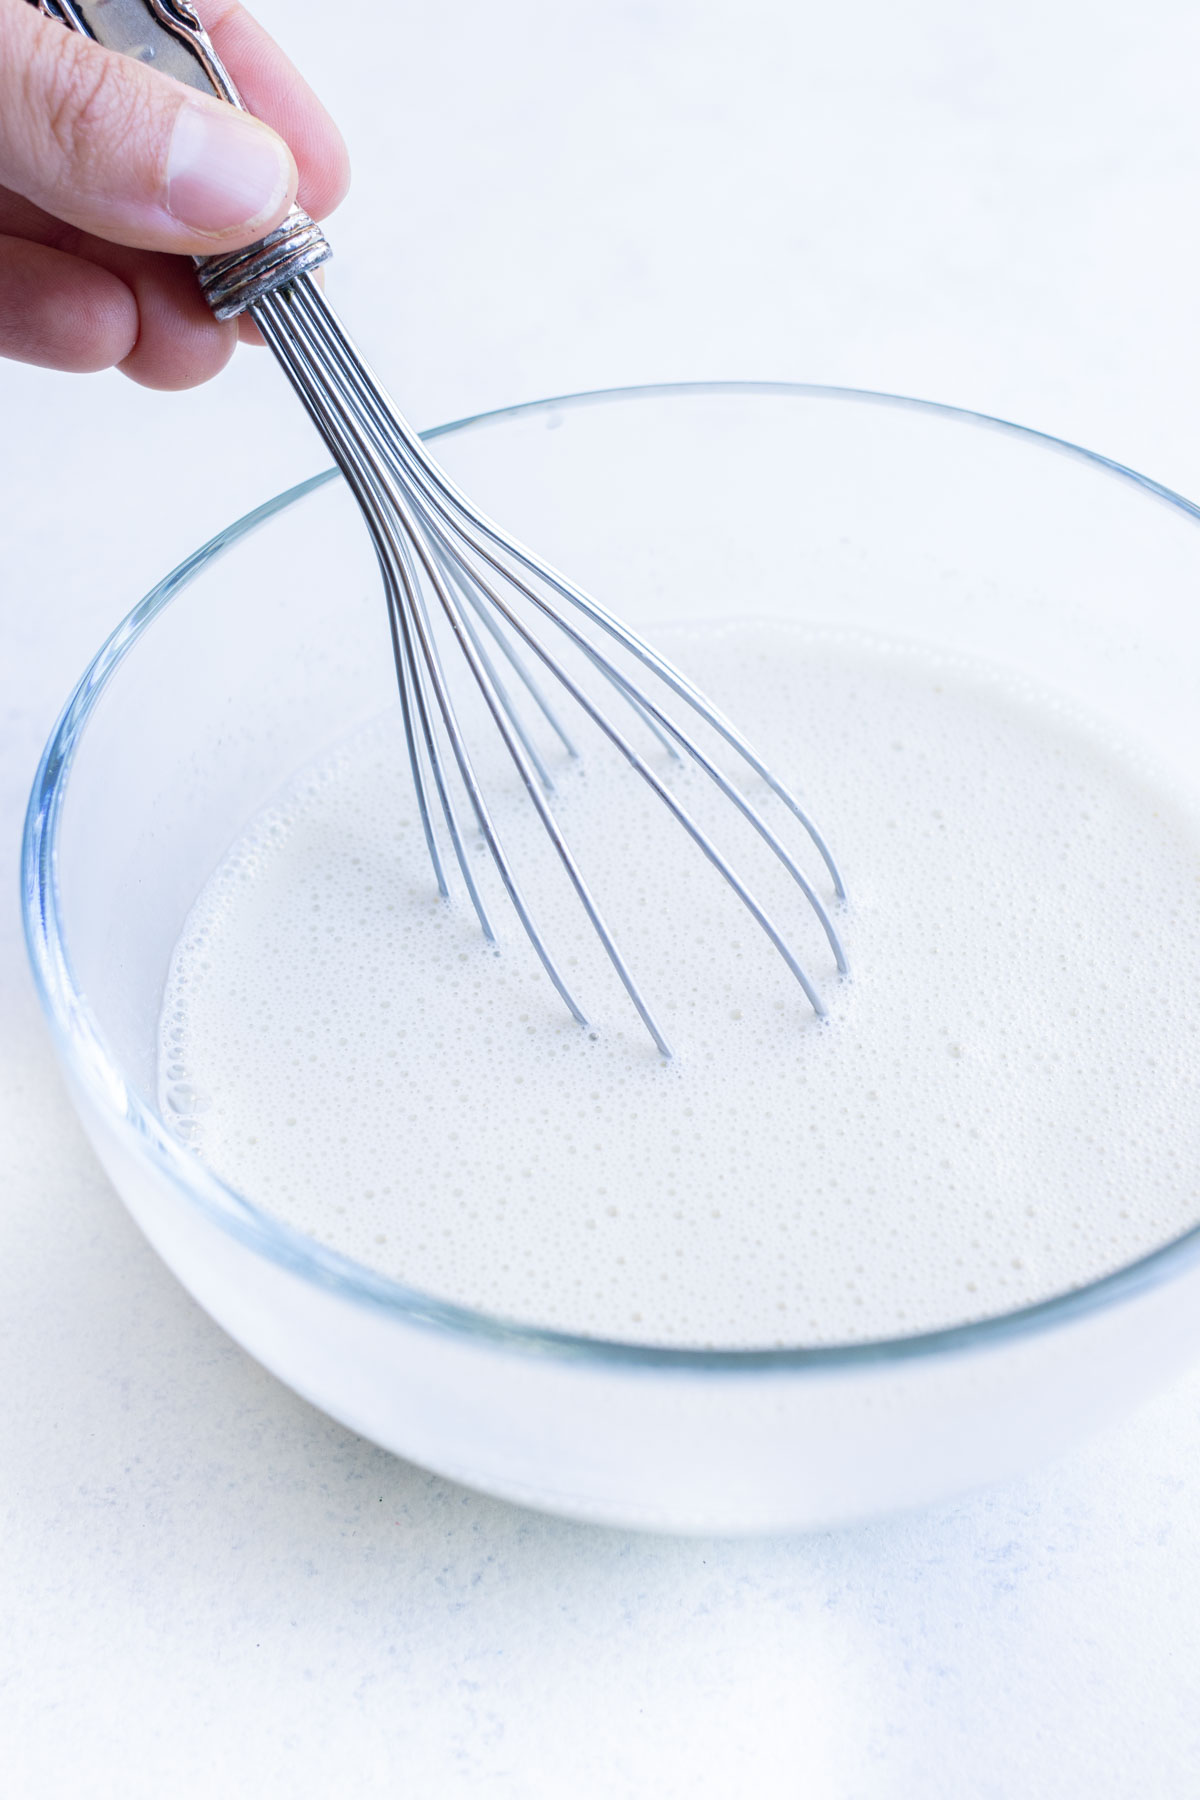 Cream and cornstarch combine to make a slurry.